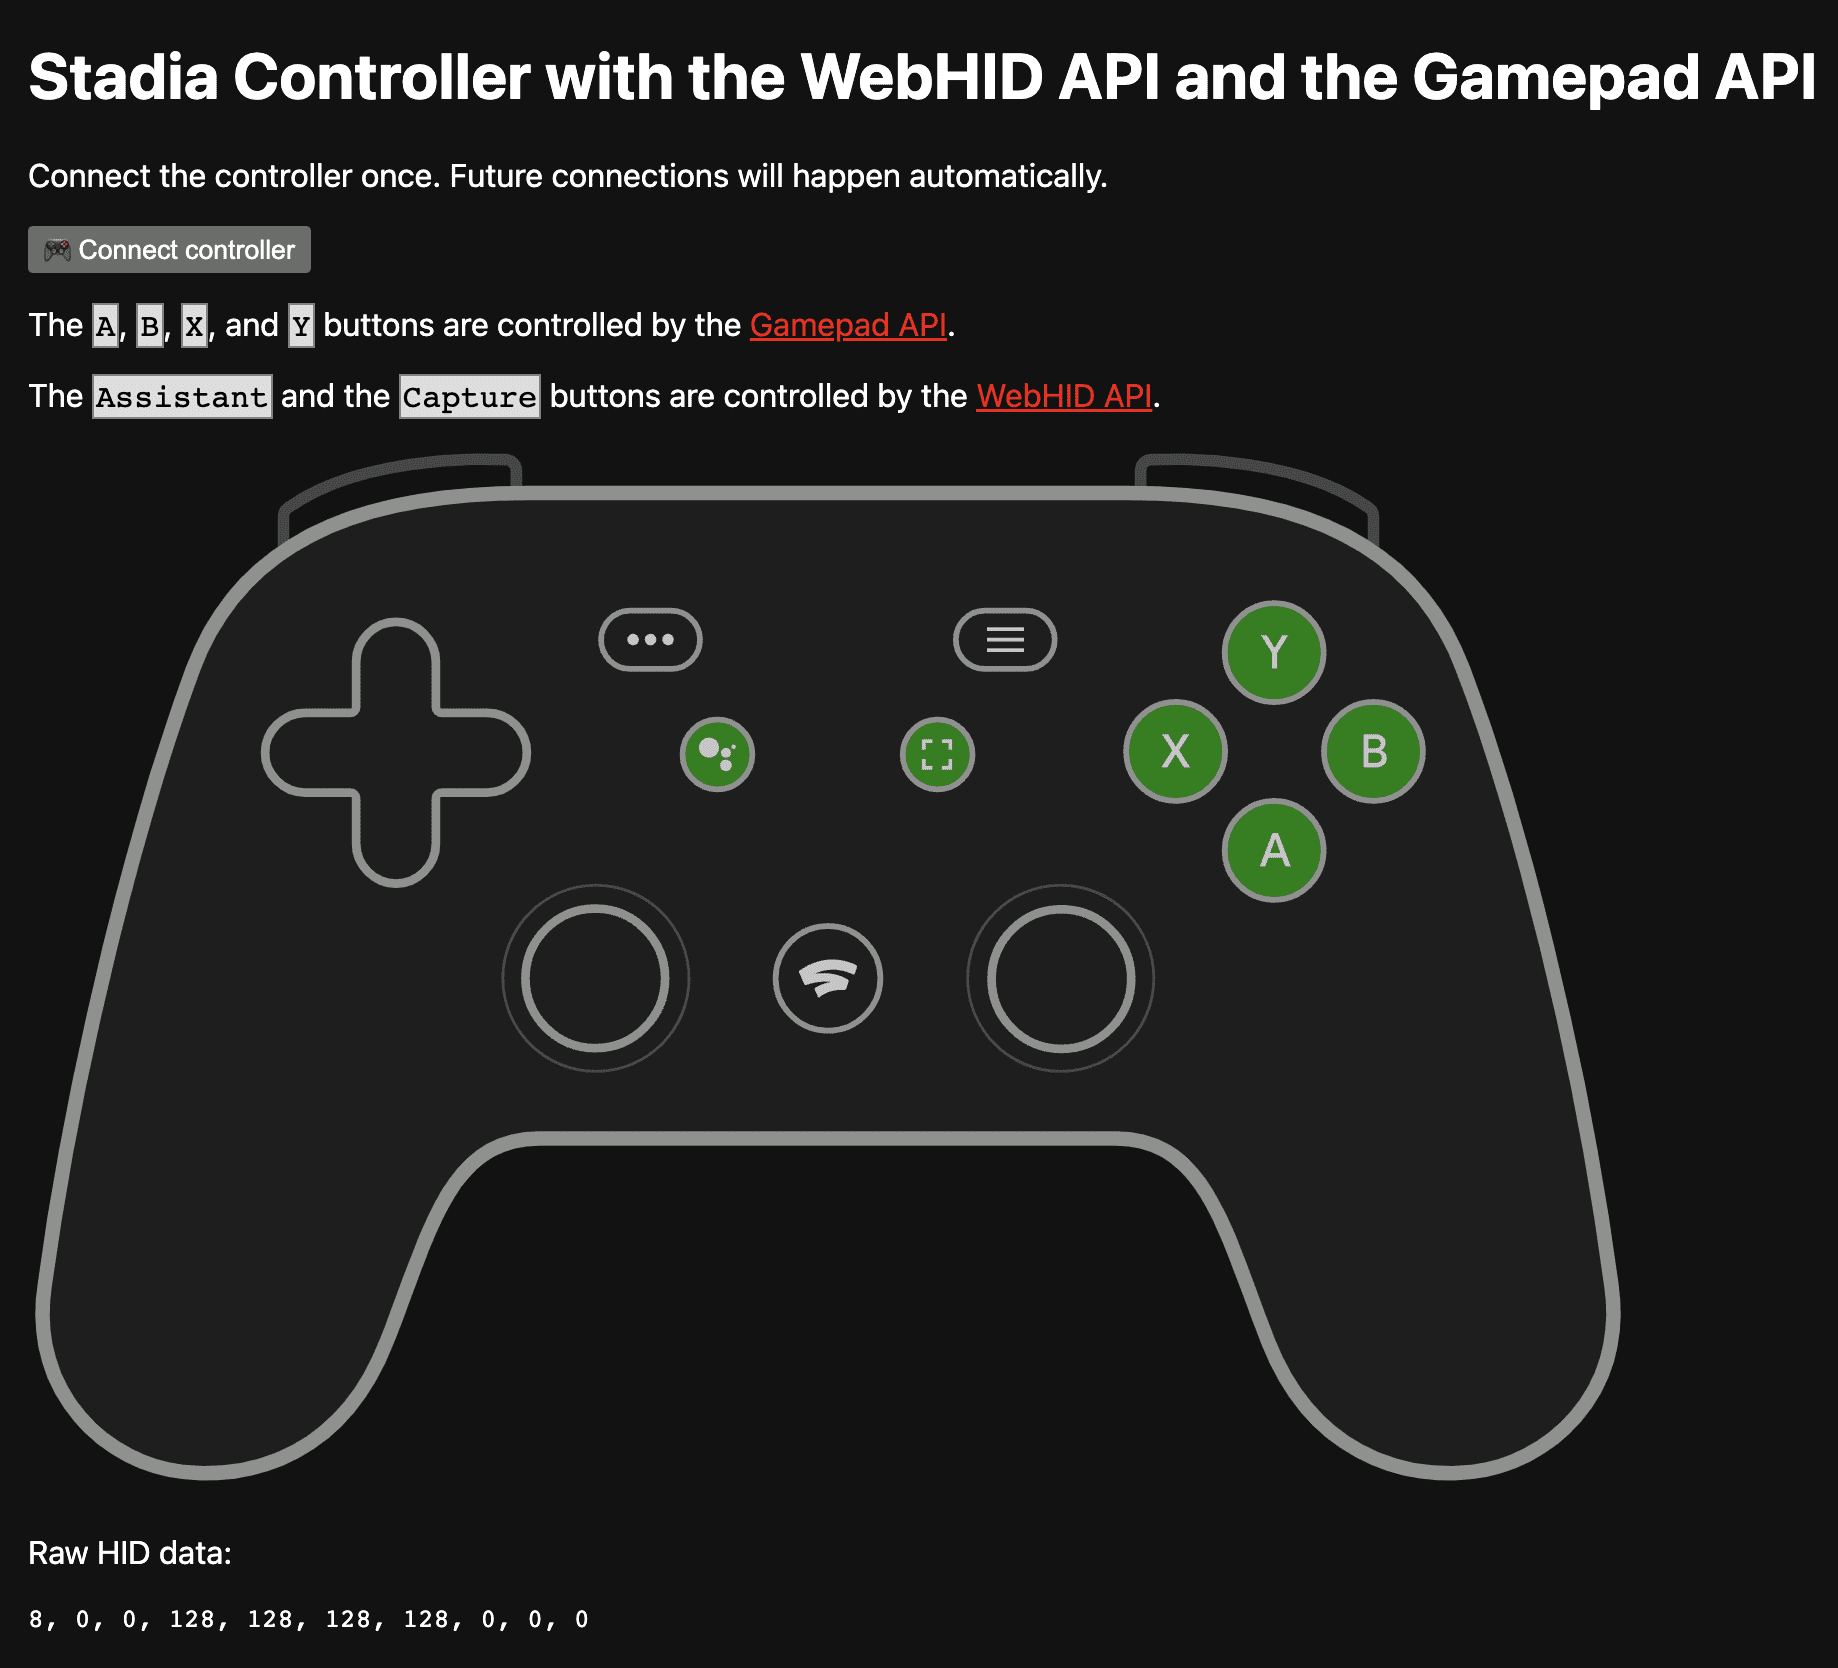 Ứng dụng minh hoạ tại https://stadia-controller-webhid-gamepad.glitch.me/ cho thấy các nút A, B, X và Y do API Gamepad kiểm soát, còn nút Trợ lý và nút Capture do API WebHID kiểm soát.